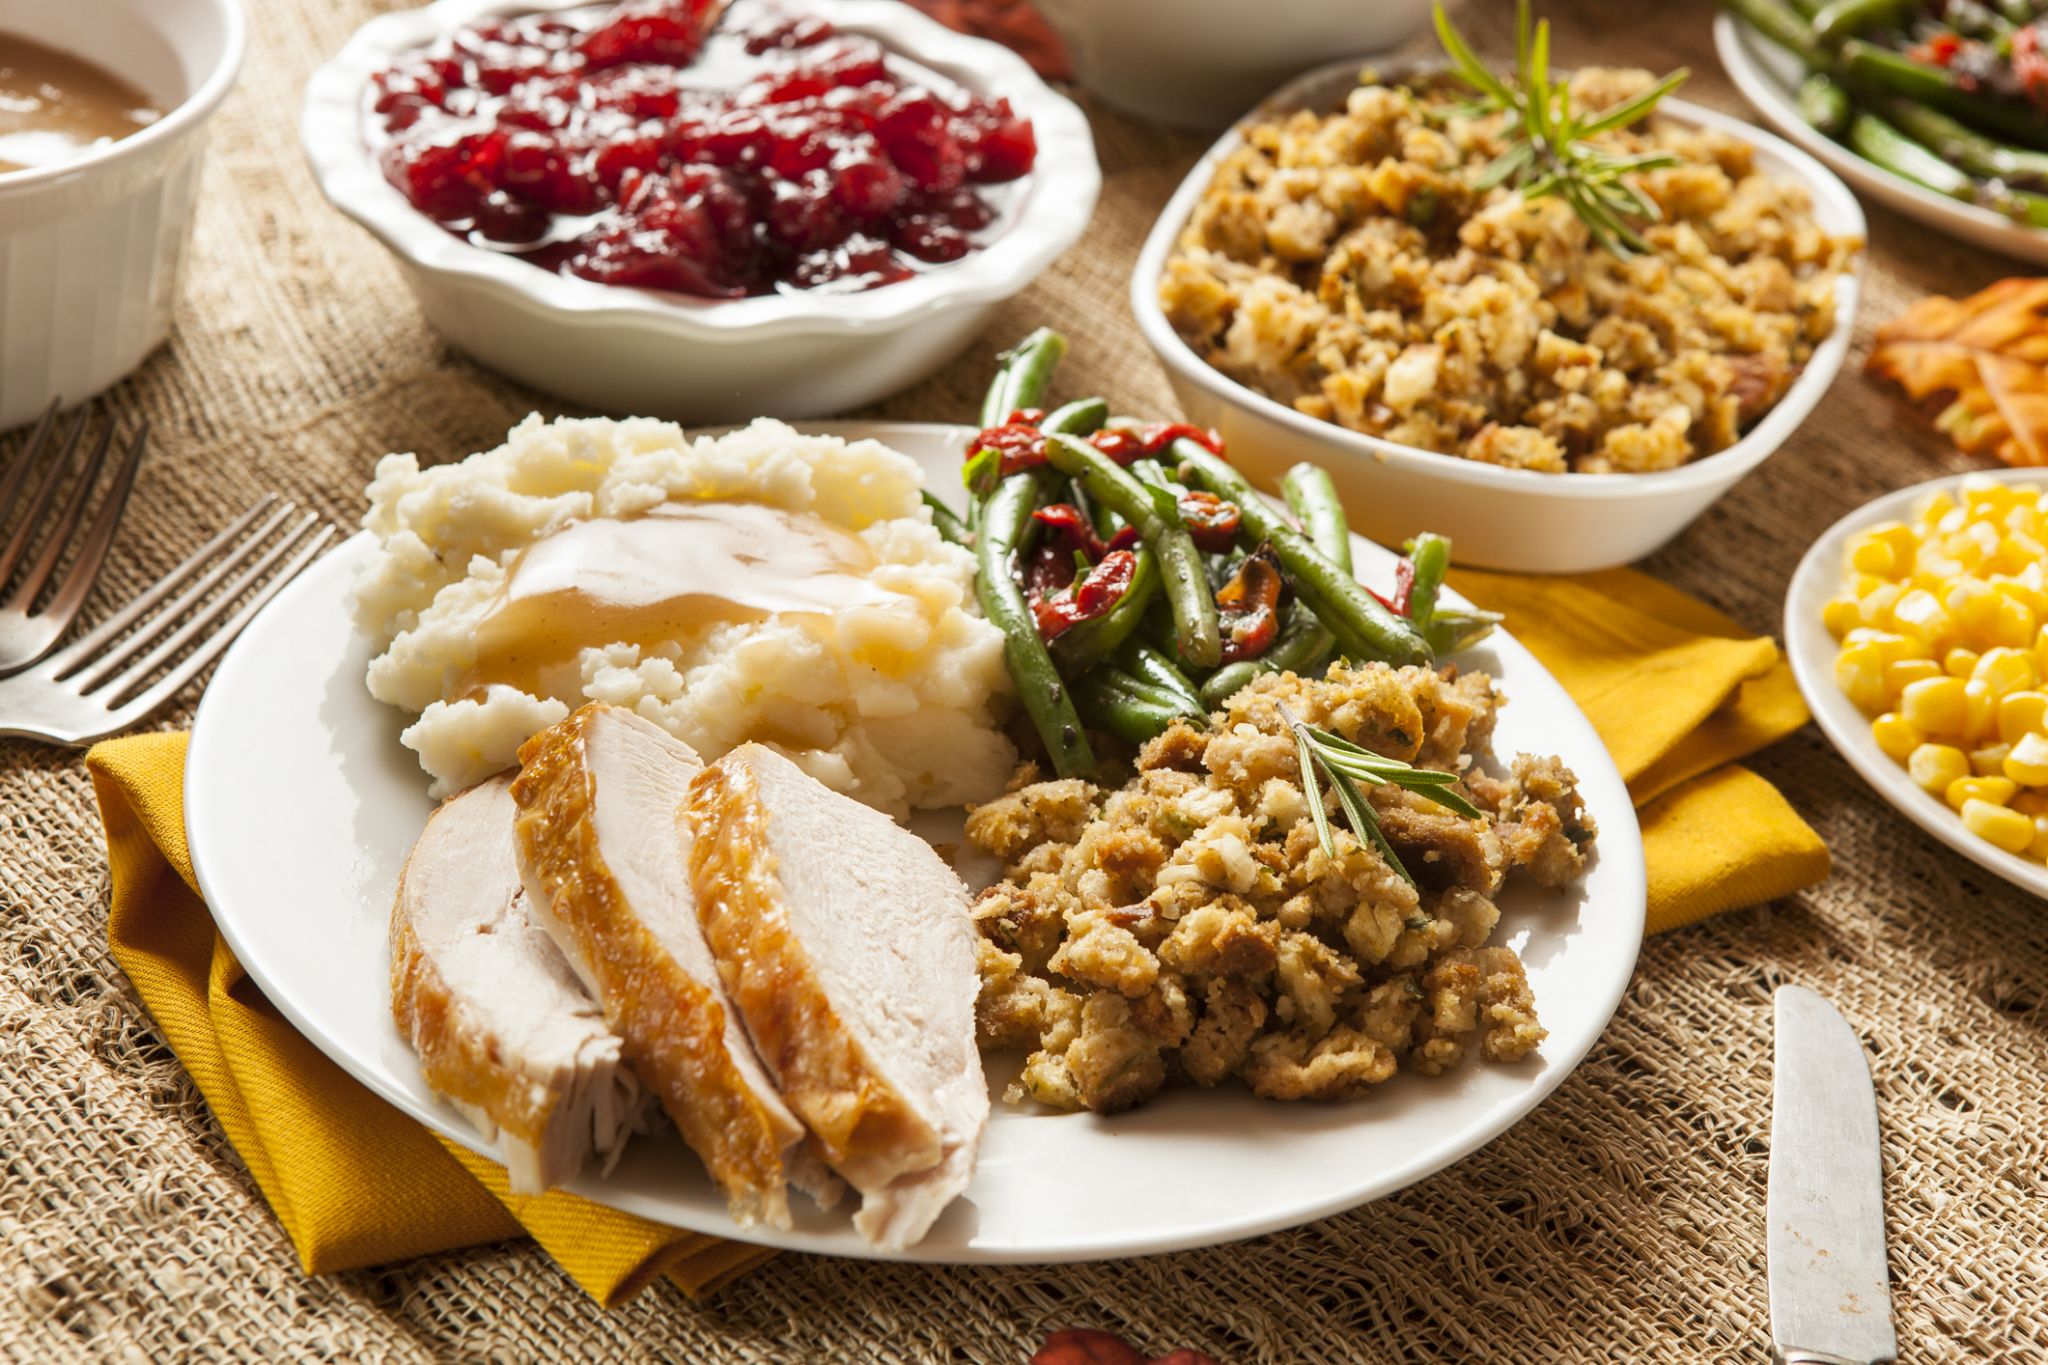 thanksgiving dinner border images